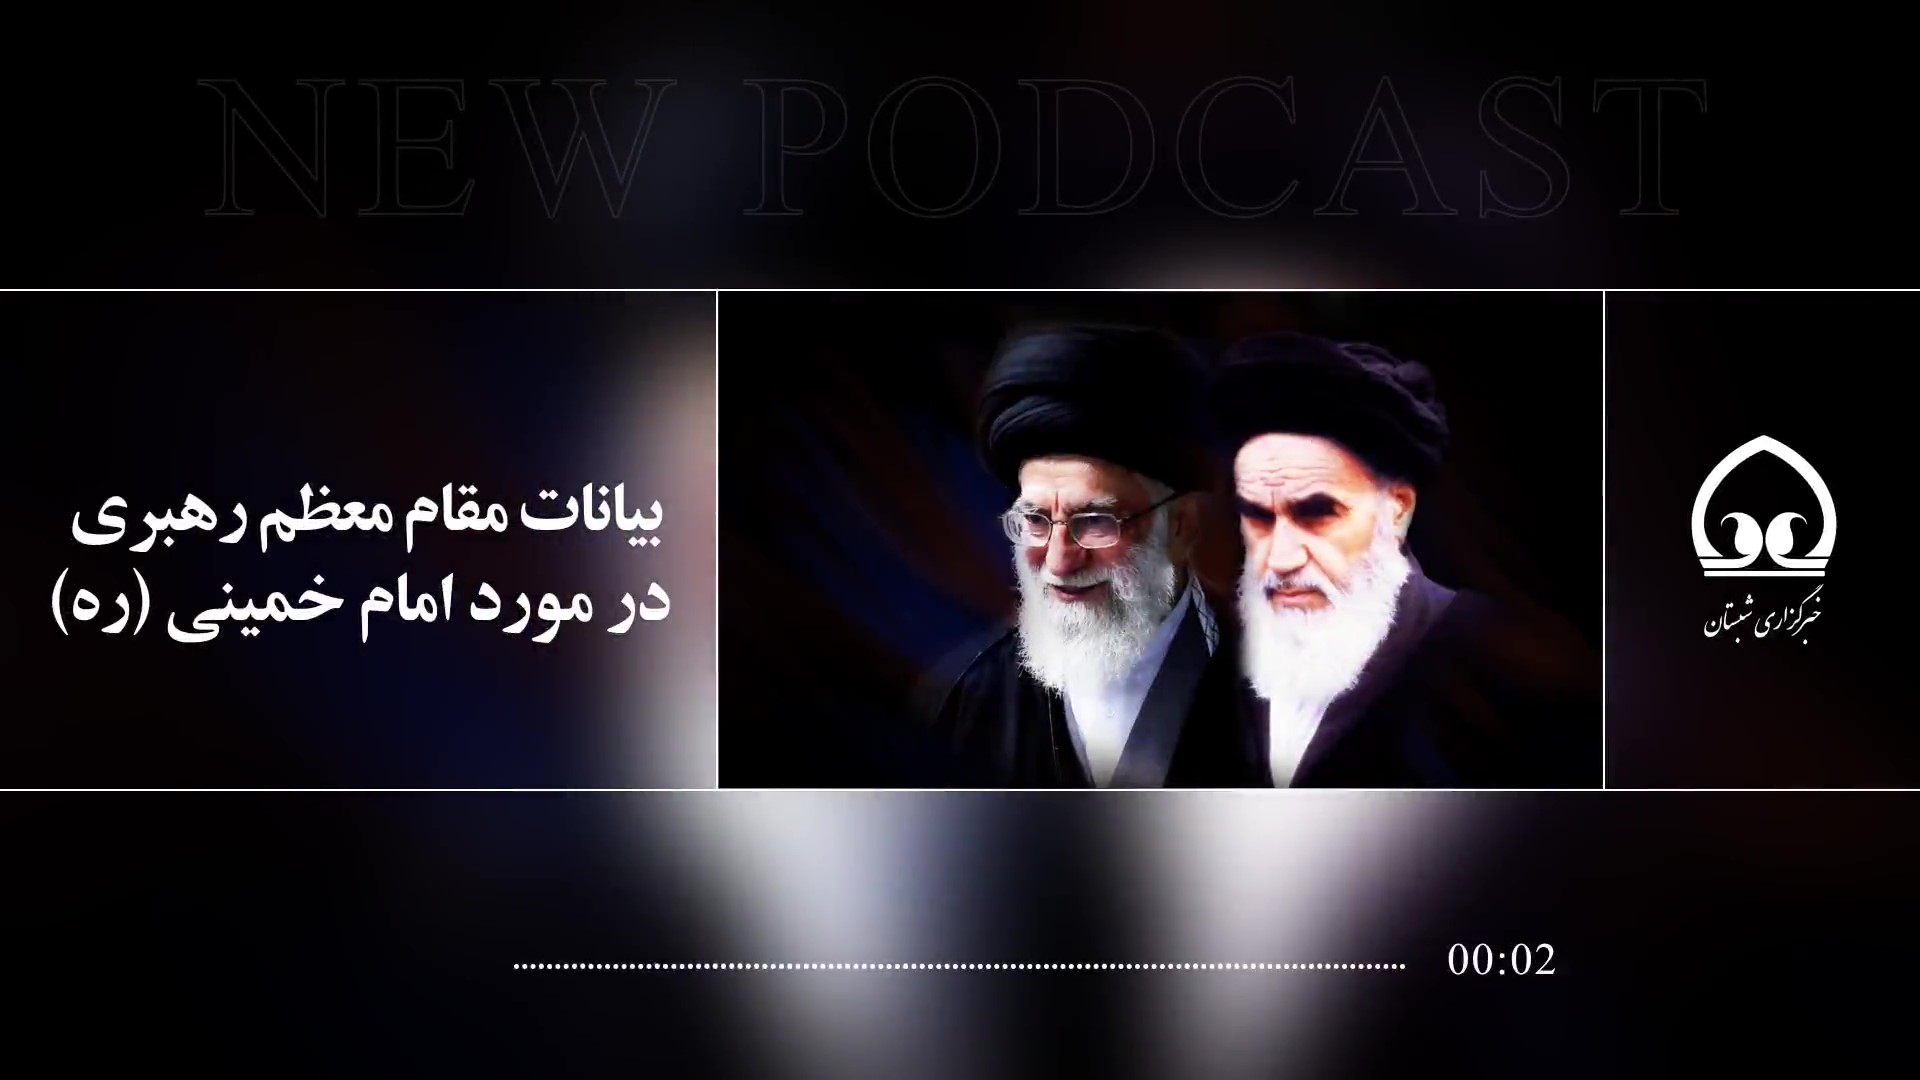  بیانات مقام معظم رهبری در مورد امام خمینی (ره)